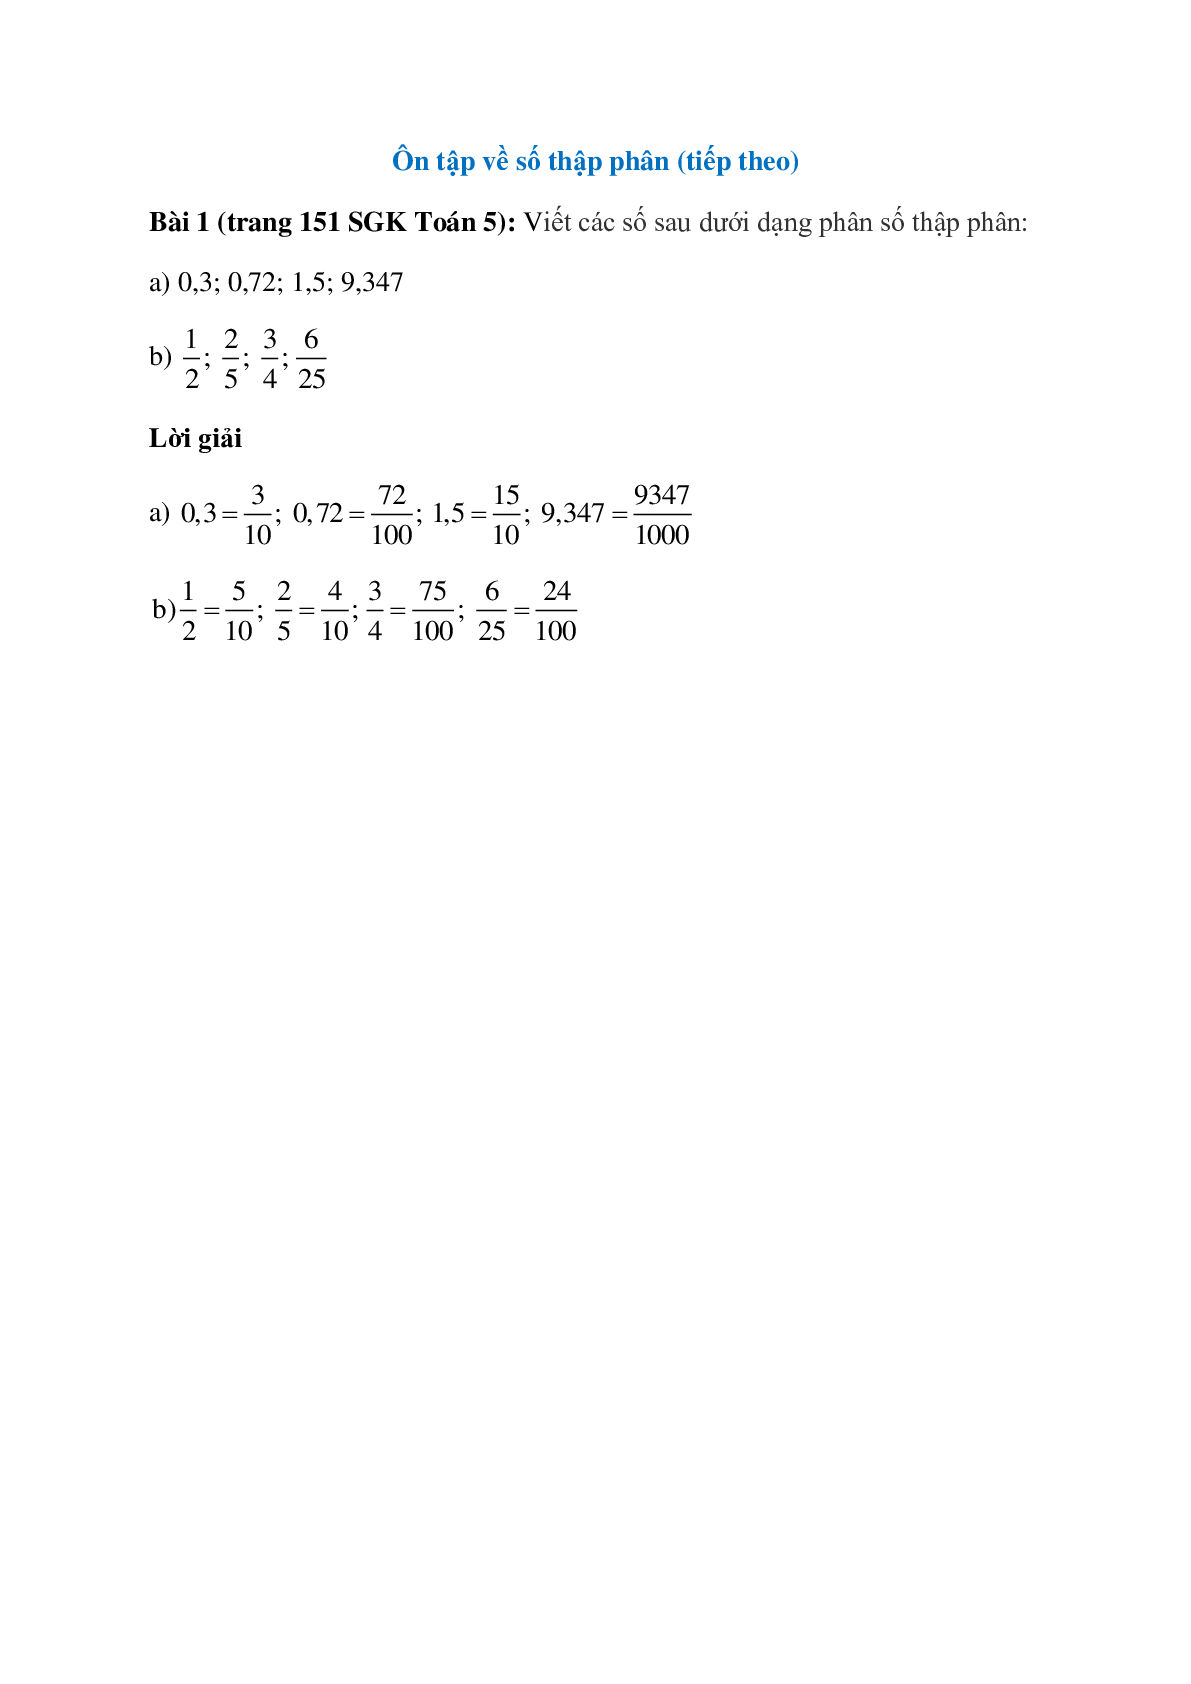 Viết các số sau dưới dạng phân số thập phân: 0,3; 0,72 (trang 1)